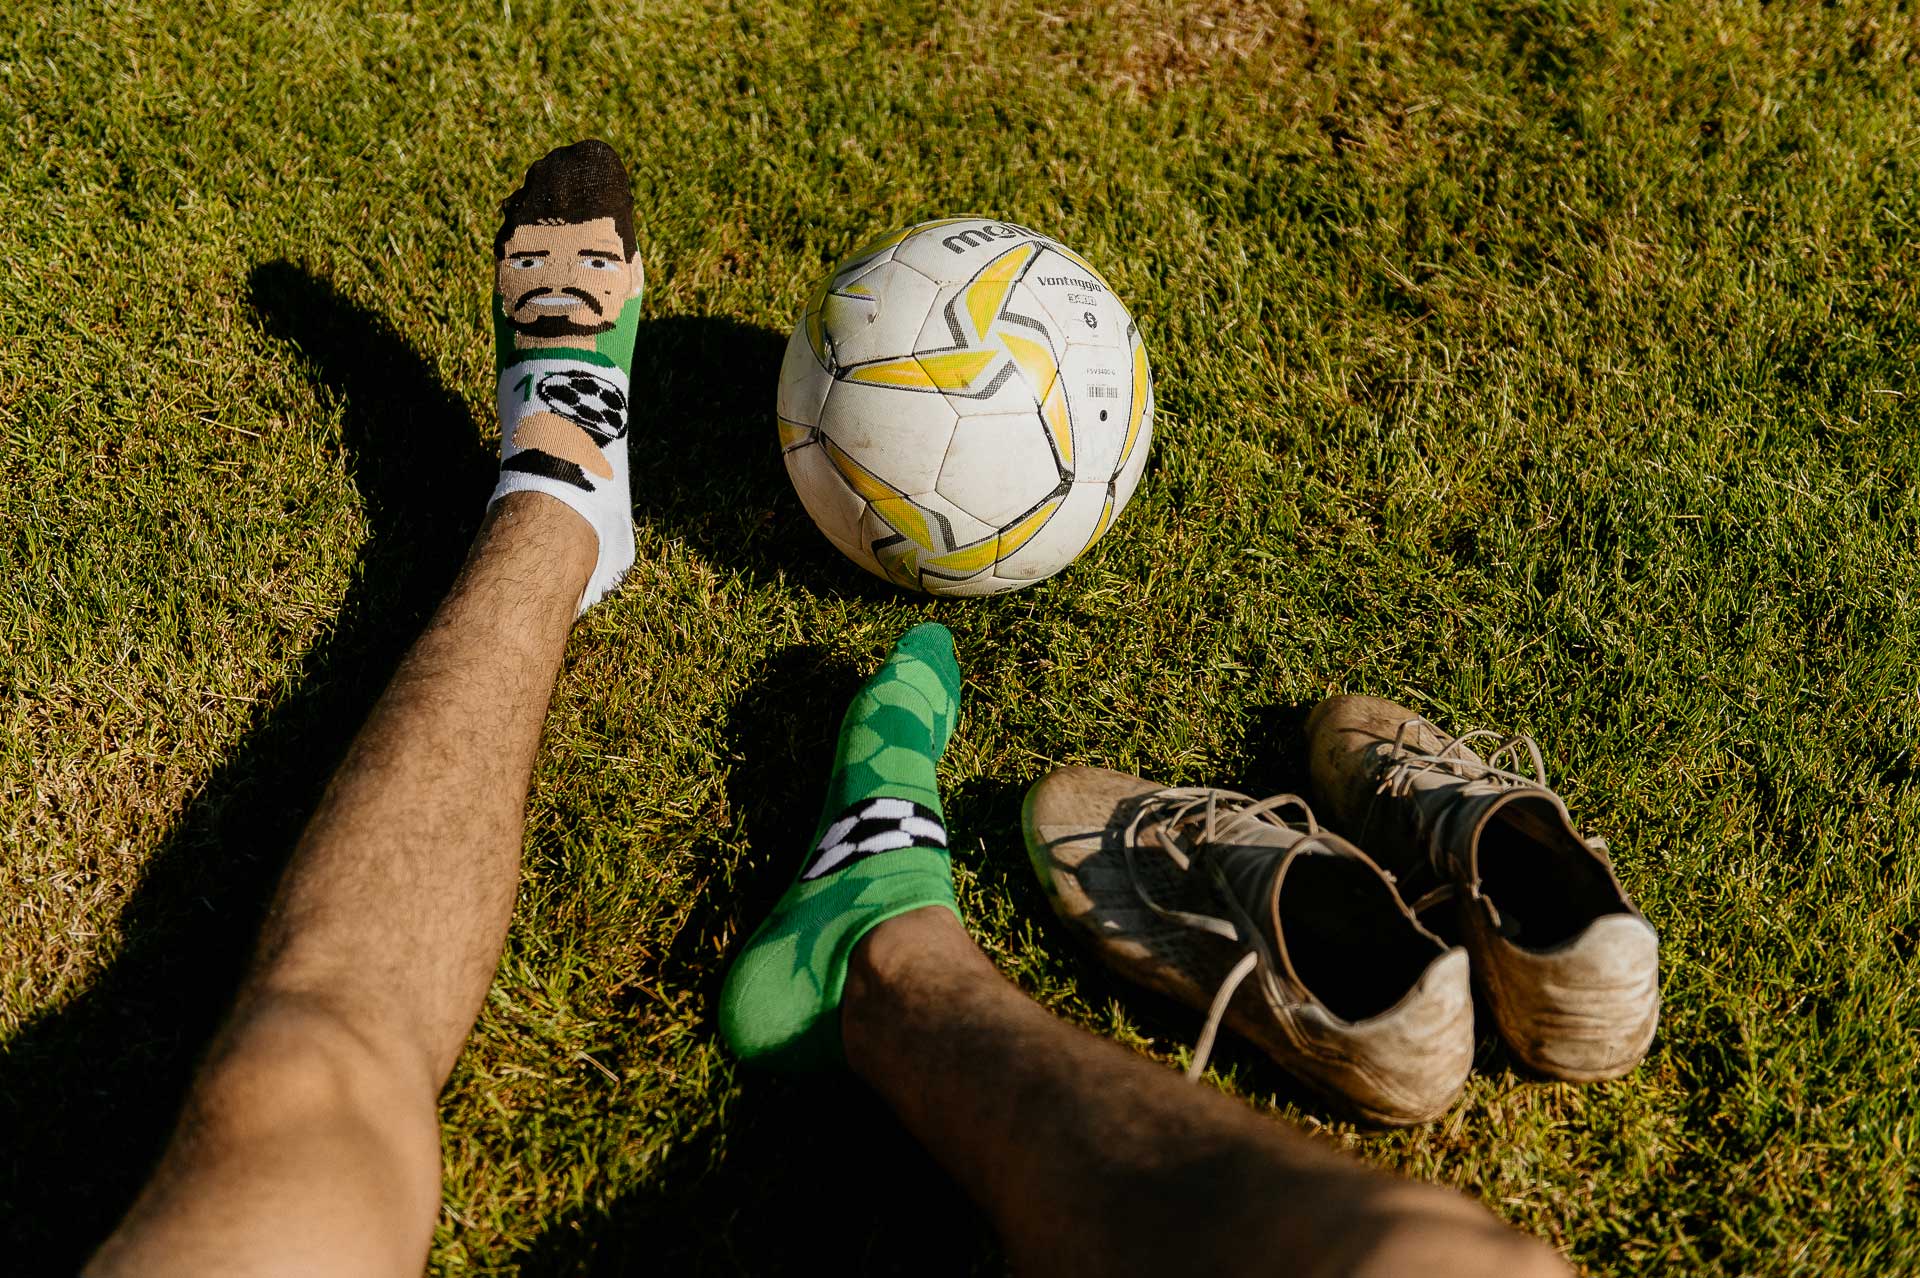 Veselé ponožky Futbalista – členkové